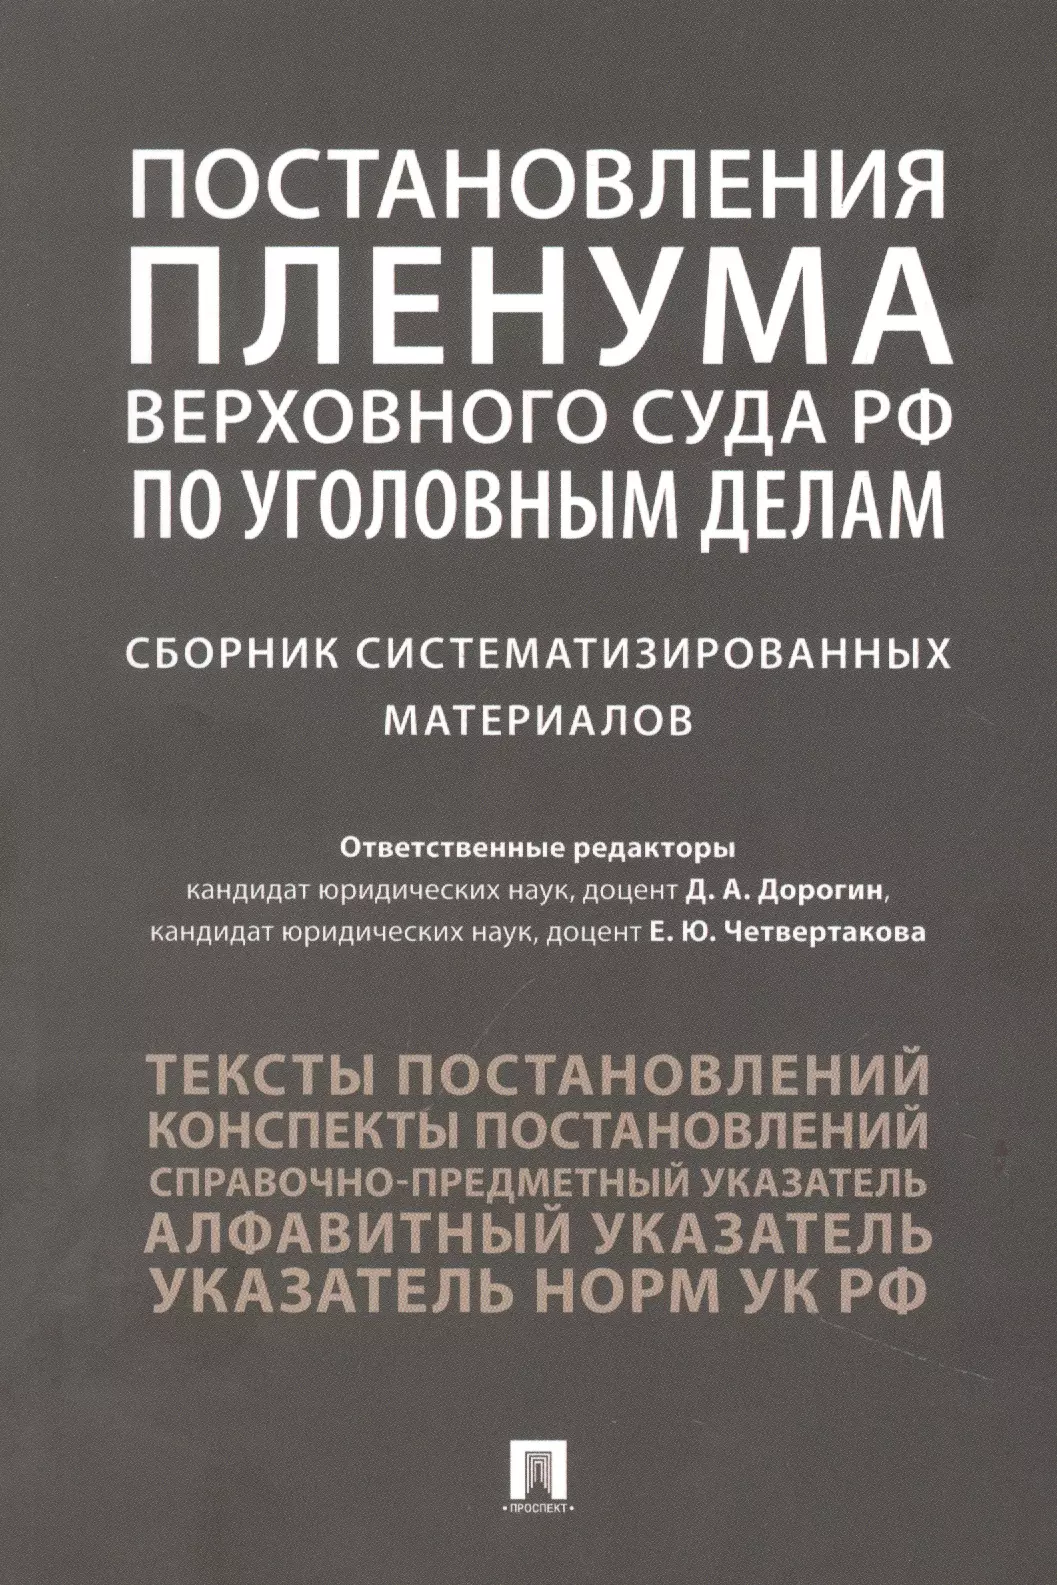 Постановления Пленума Верховного Суда РФ по уголовным делам : сборник систематизированных материалов